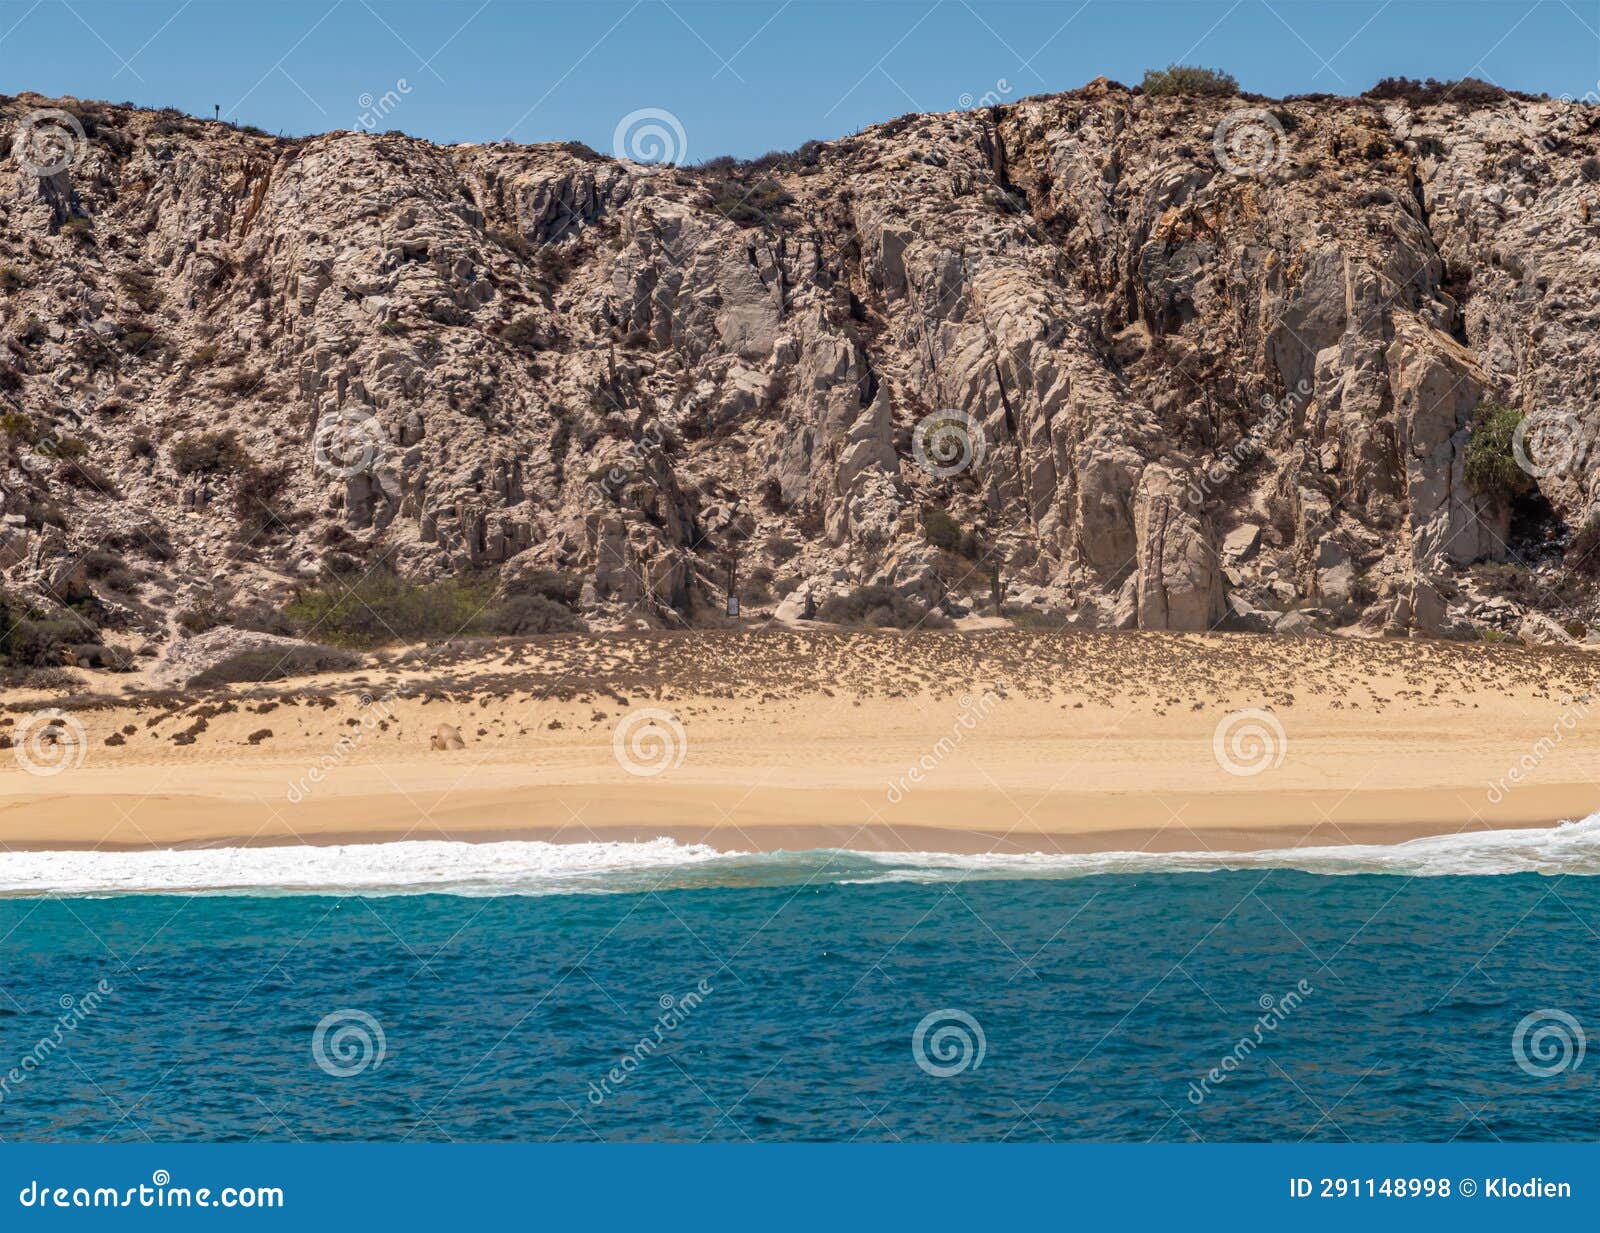 empty playa de los amantes beach, cabo san lucas, mexico